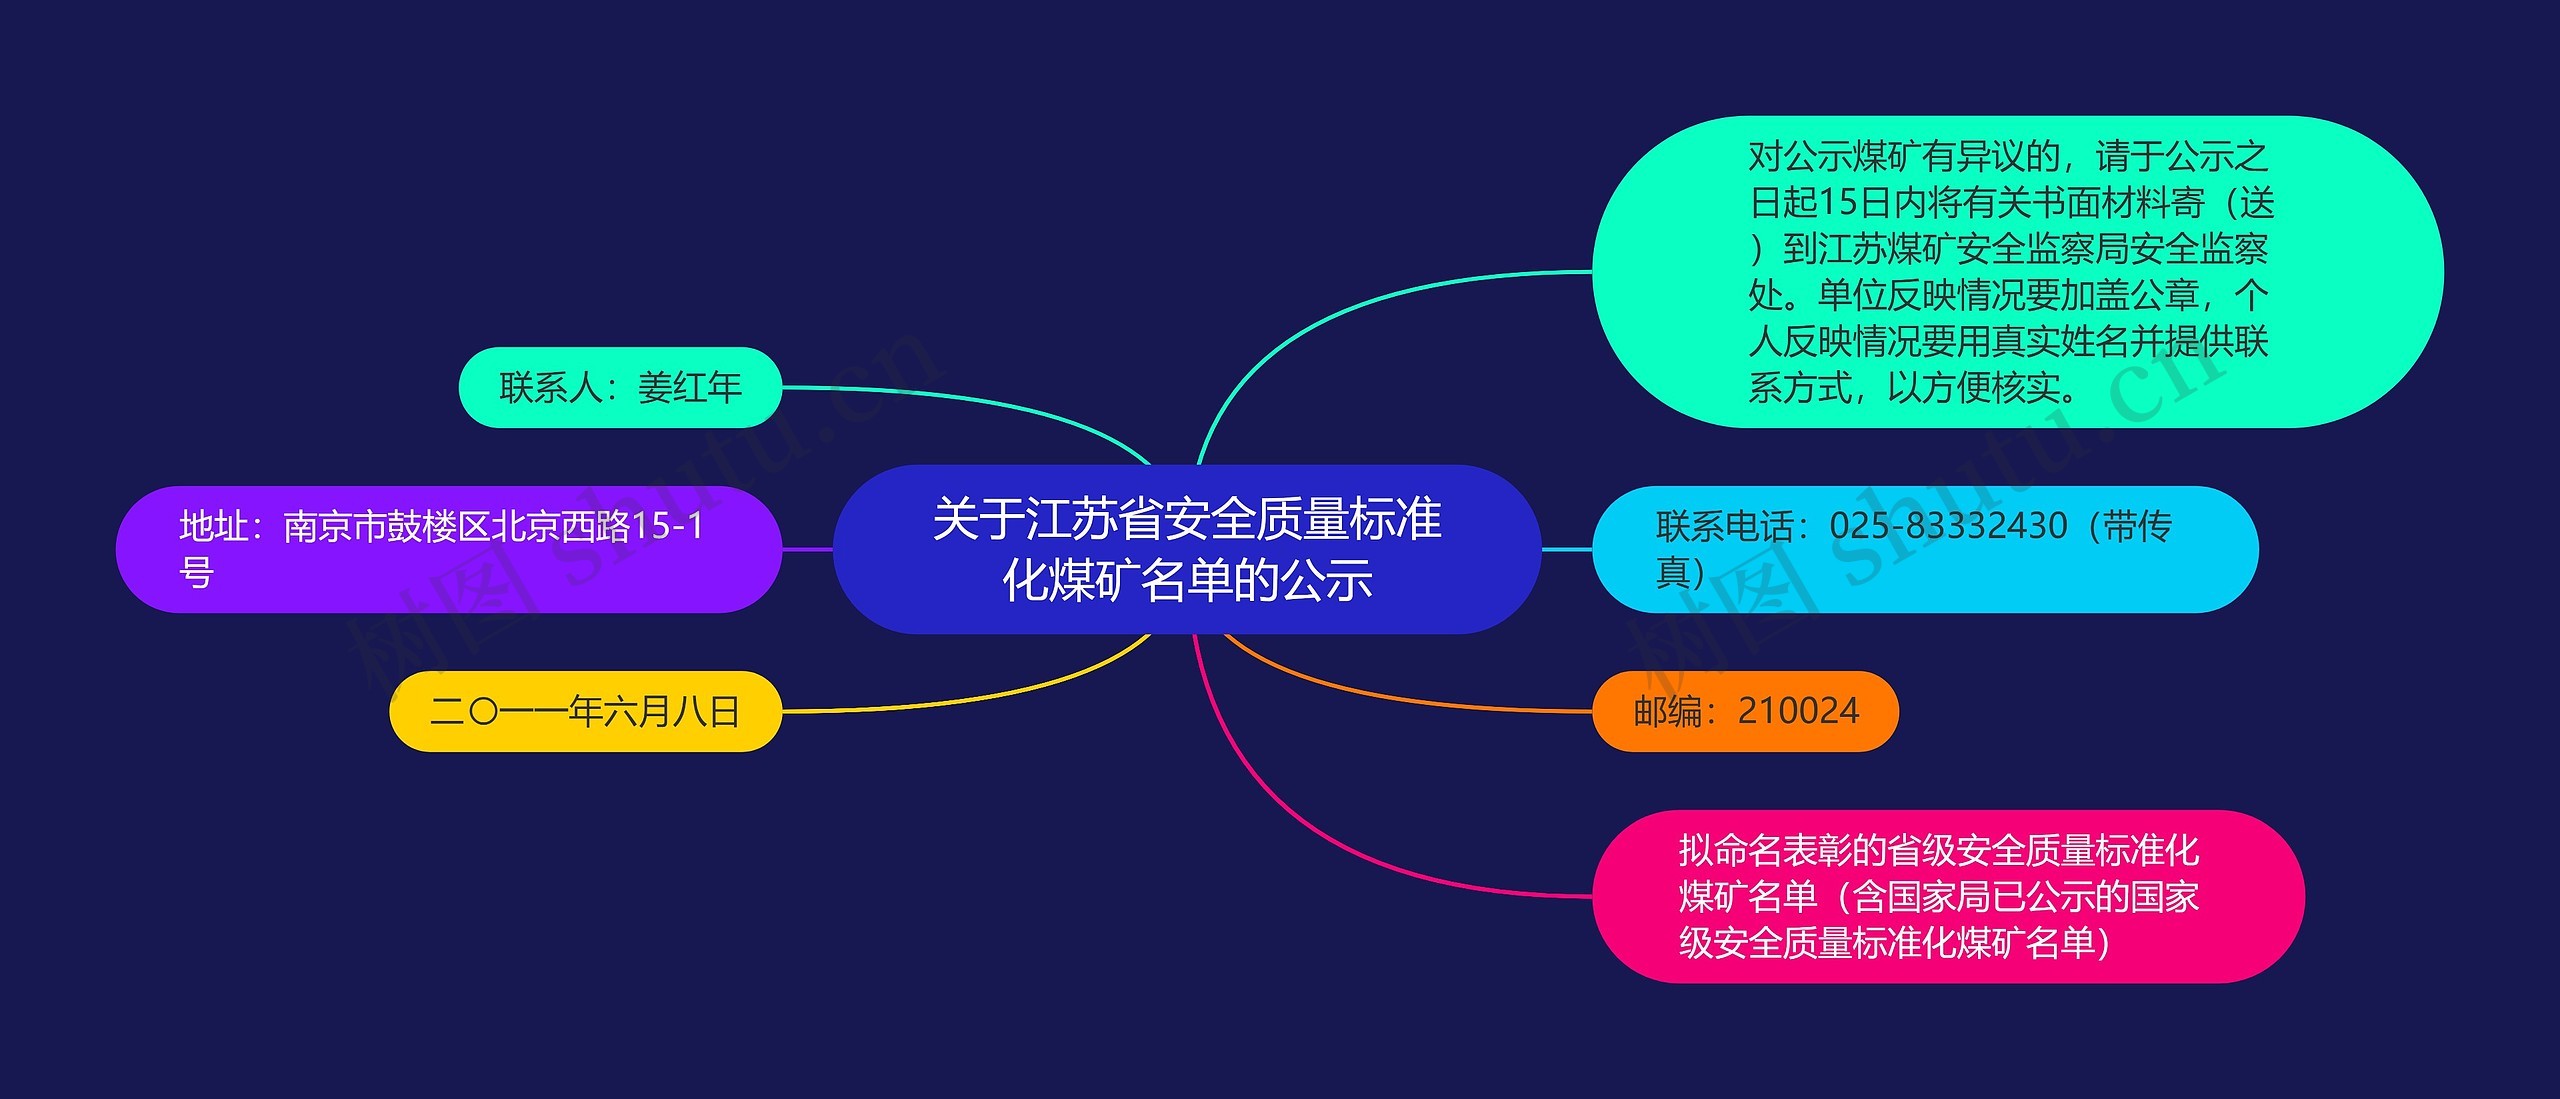 关于江苏省安全质量标准化煤矿名单的公示思维导图